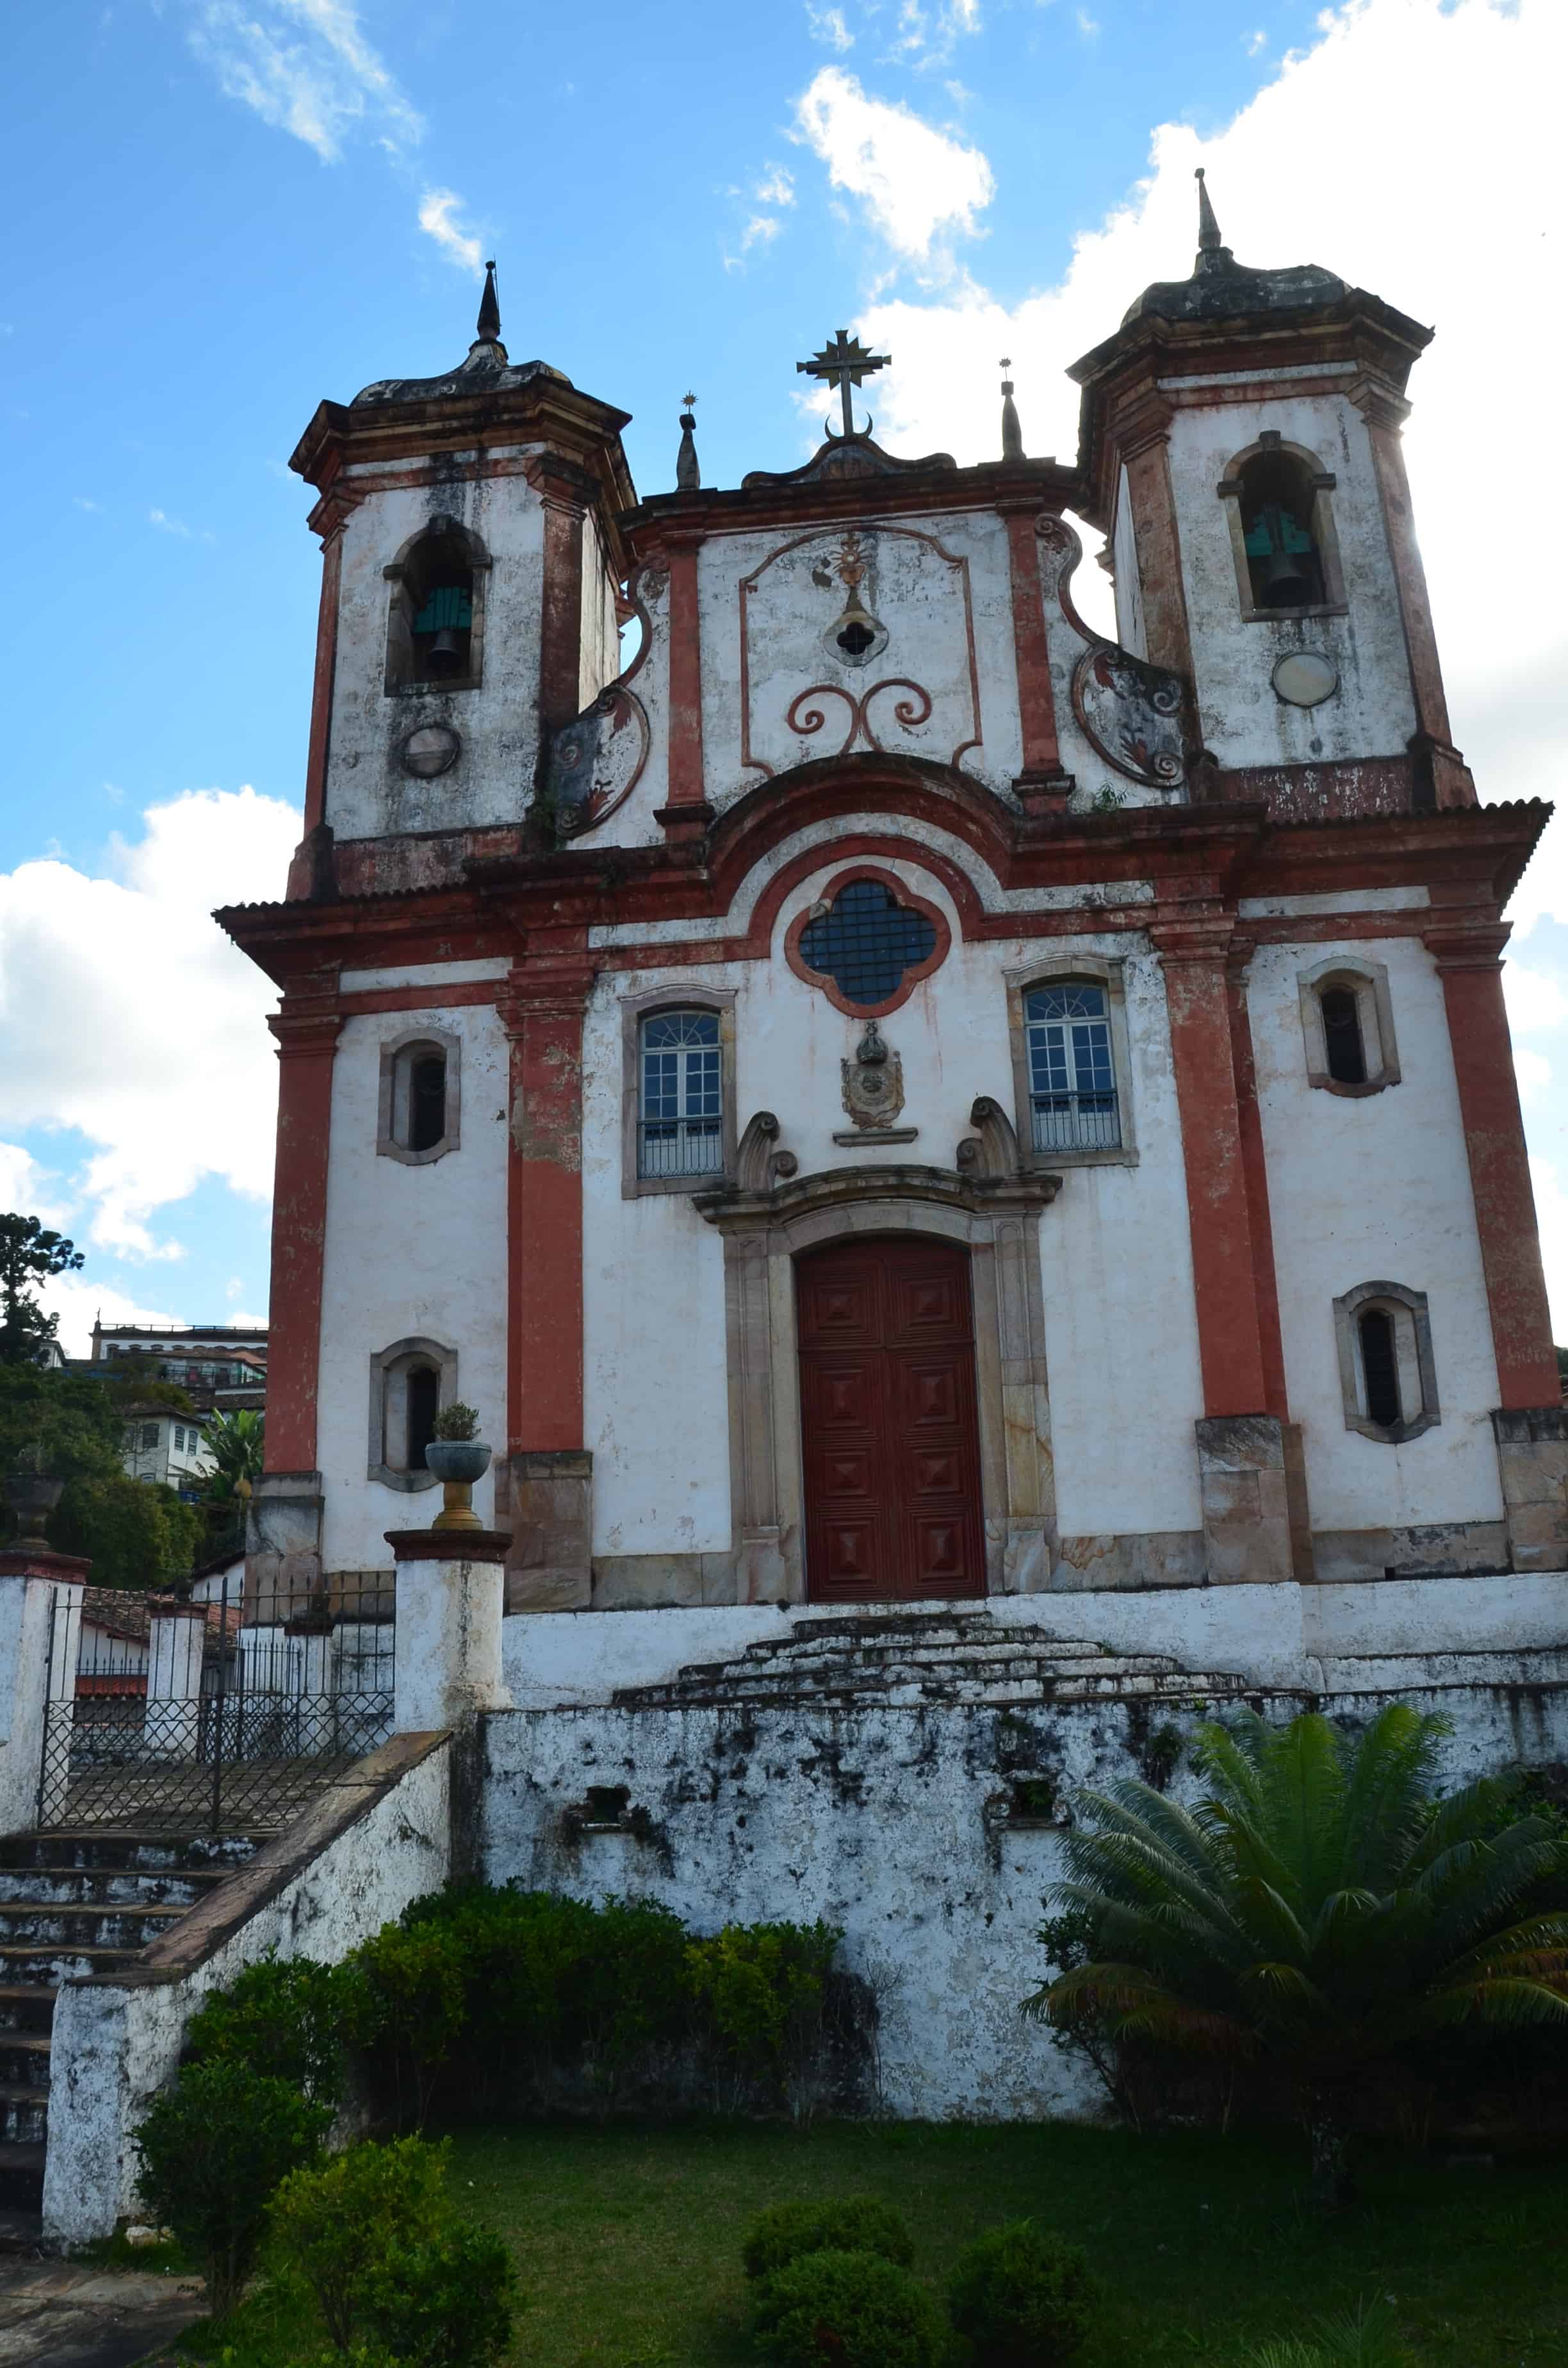 Nossa Senhora da Conceição in Ouro Preto, Brazil